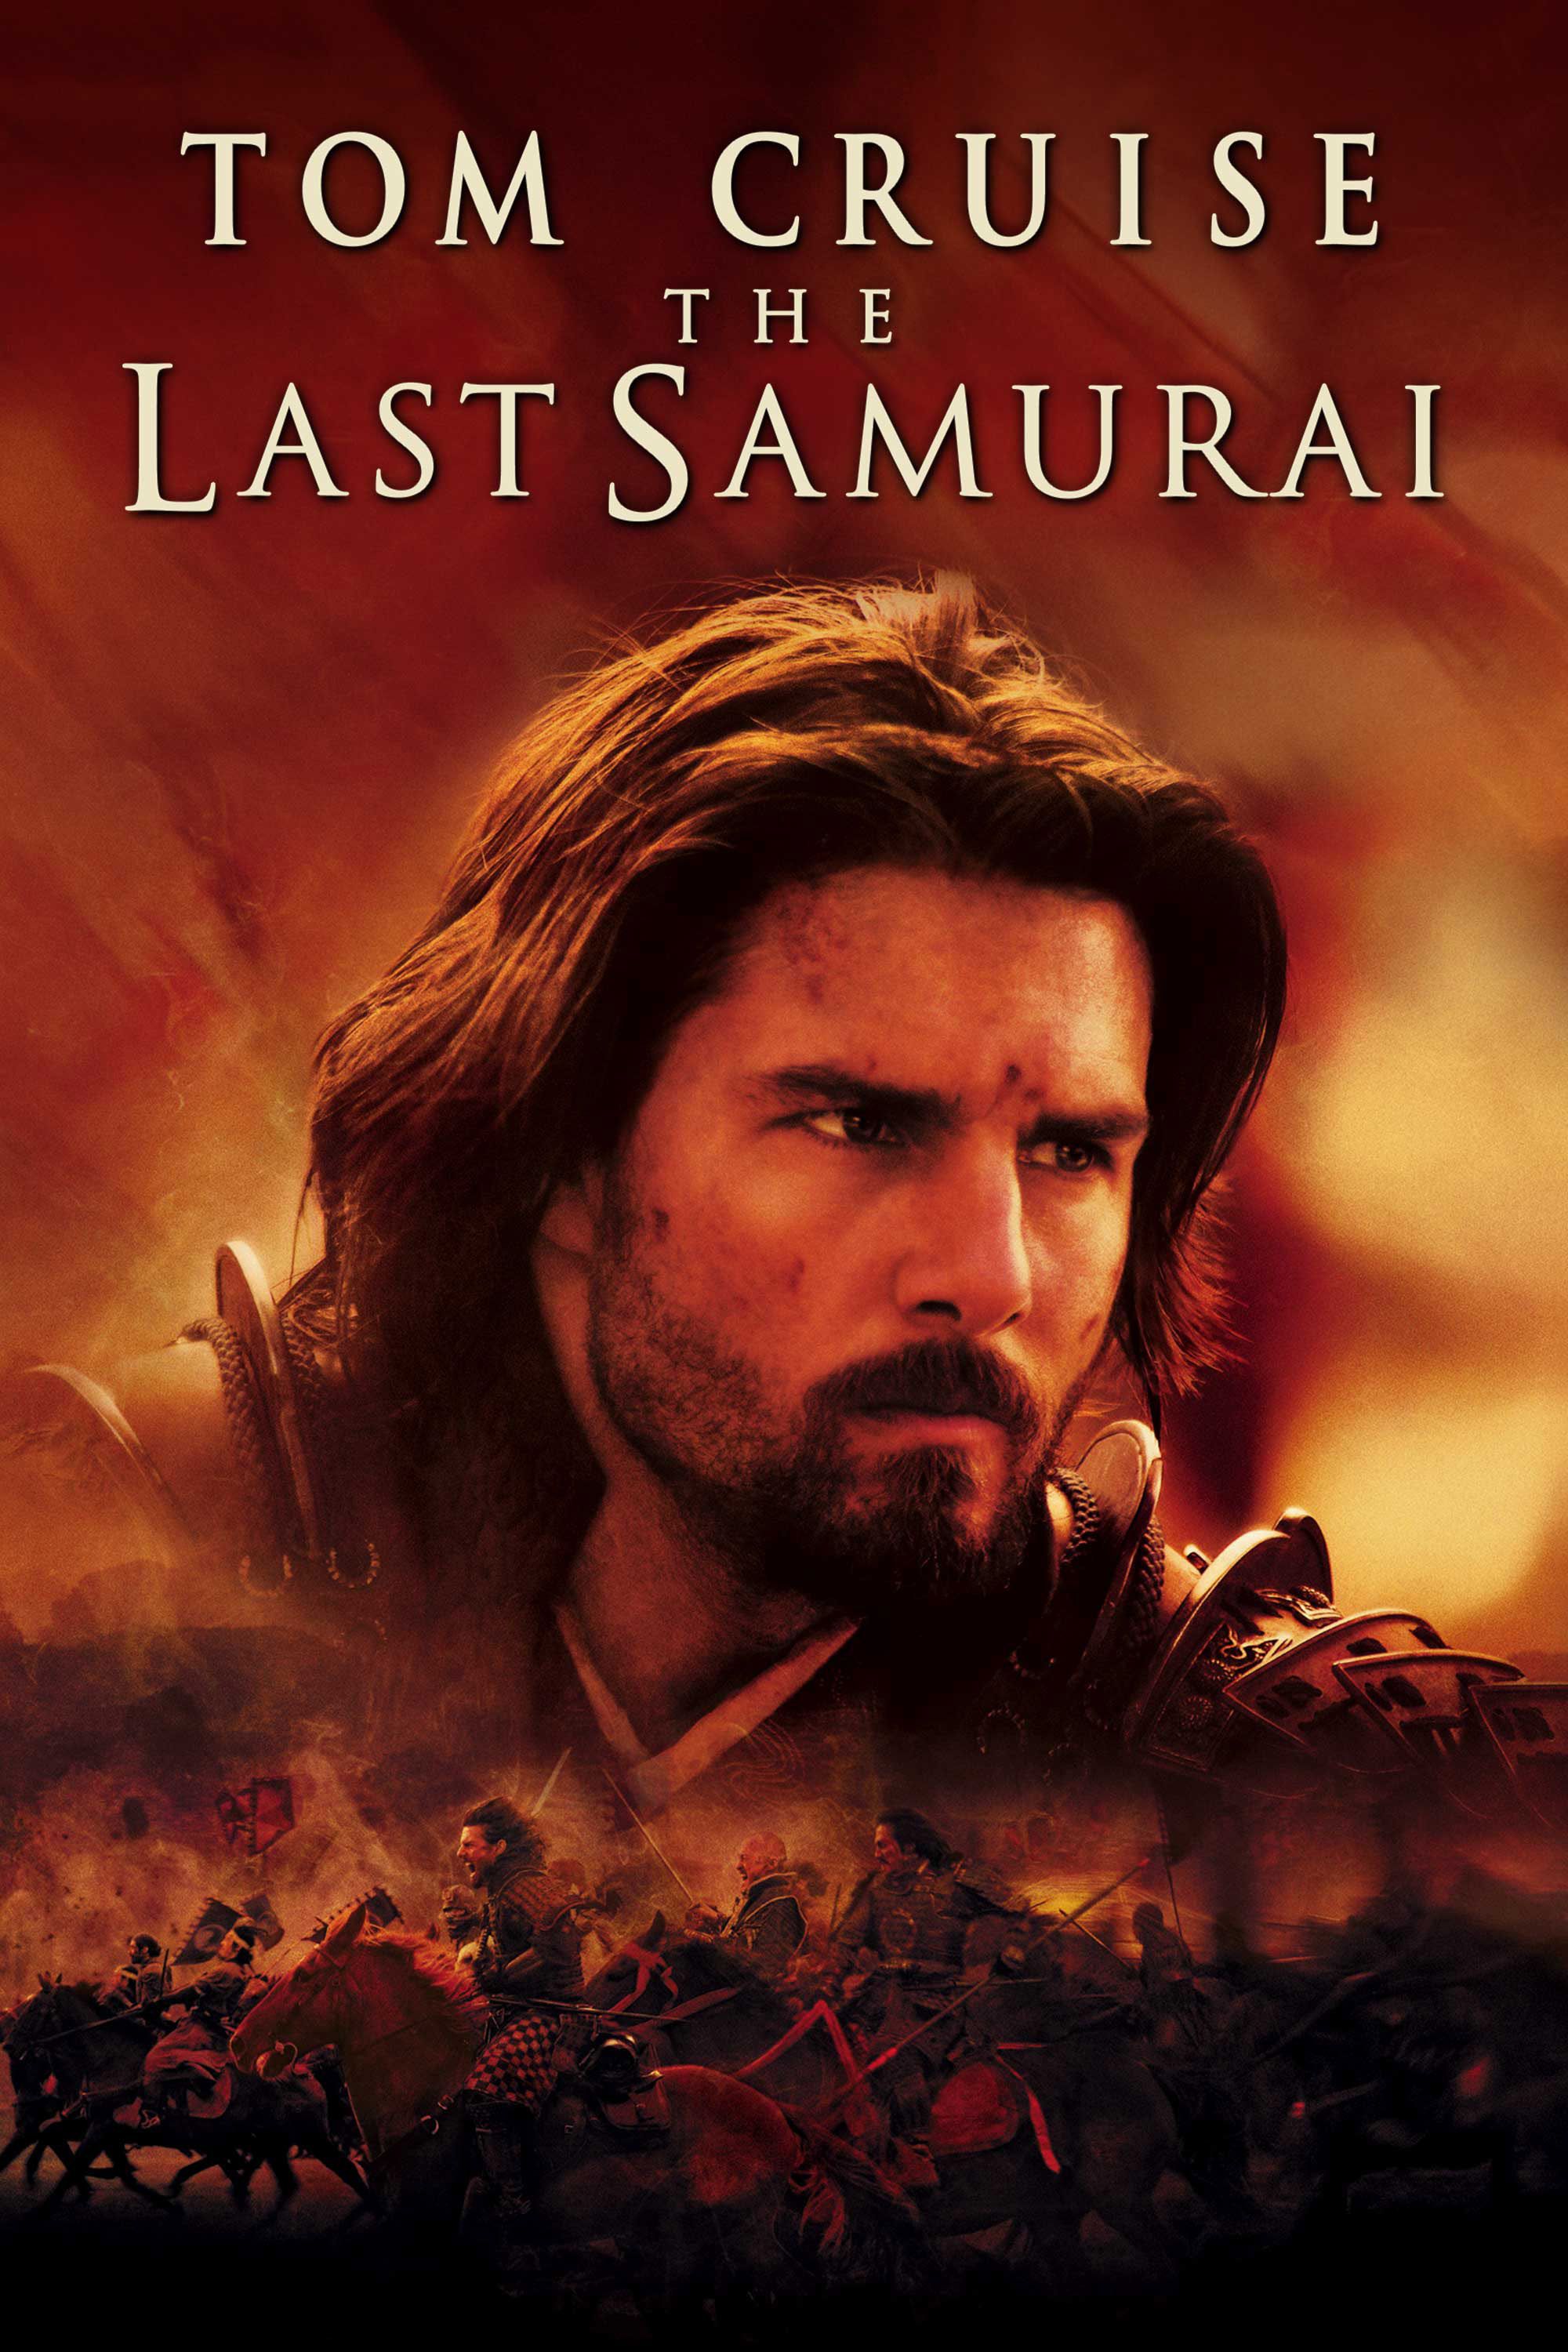 The last samurai full movie